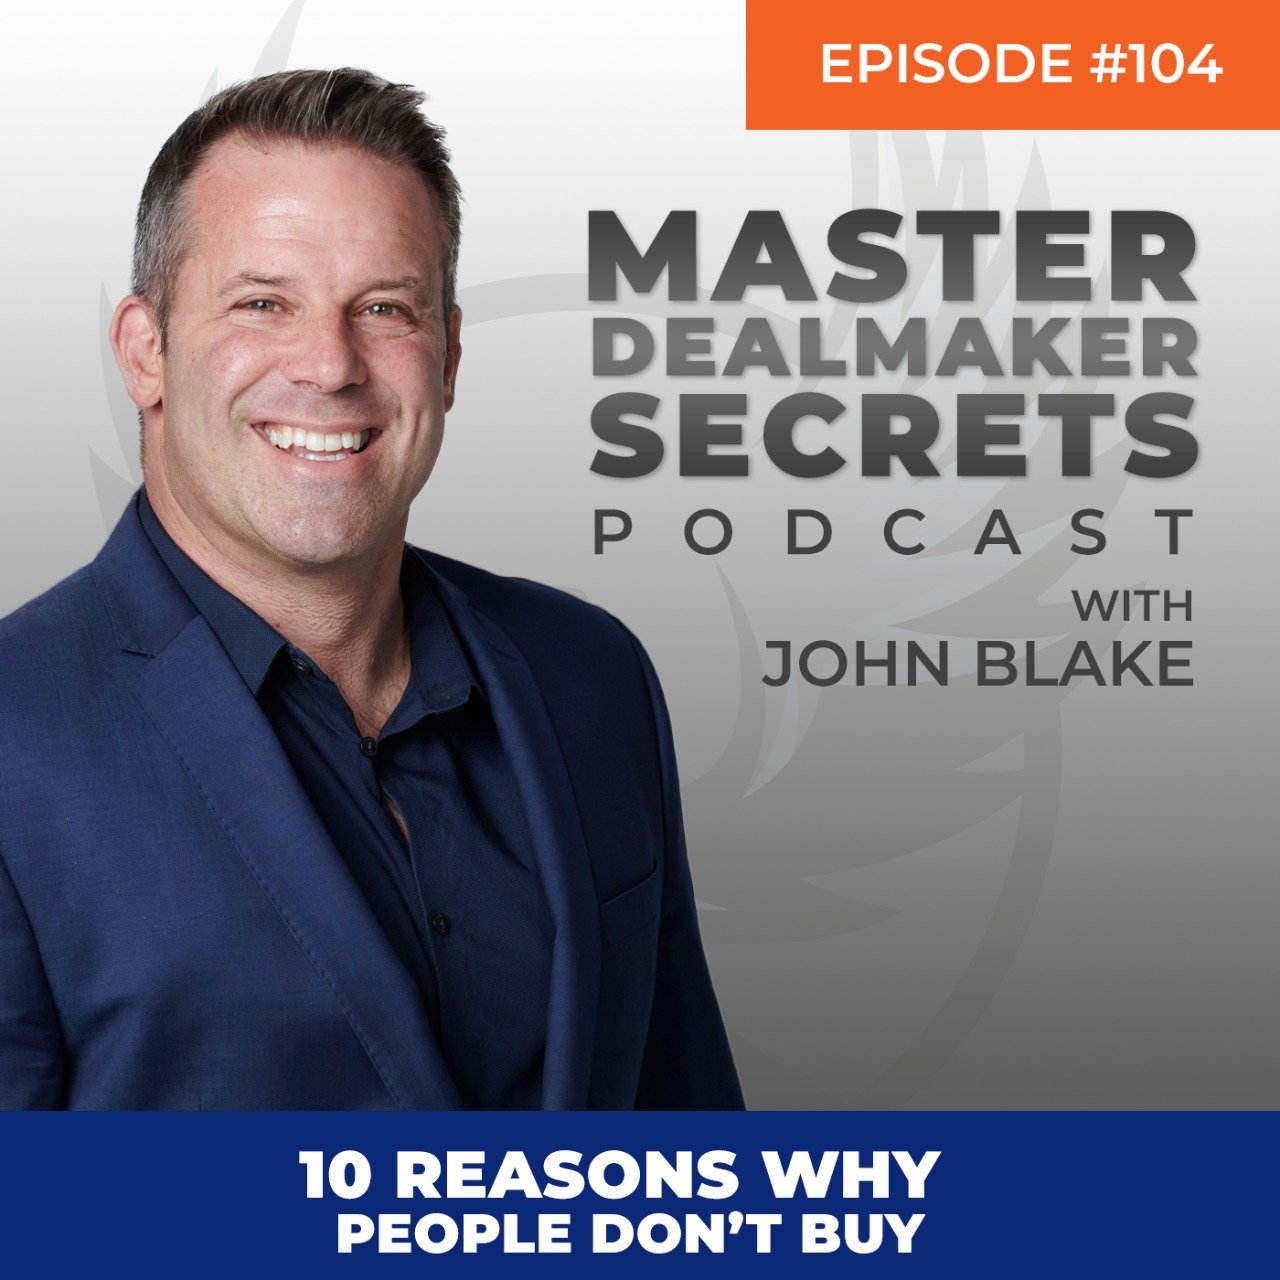 John Blake 10 Reasons Why People Don't Buy